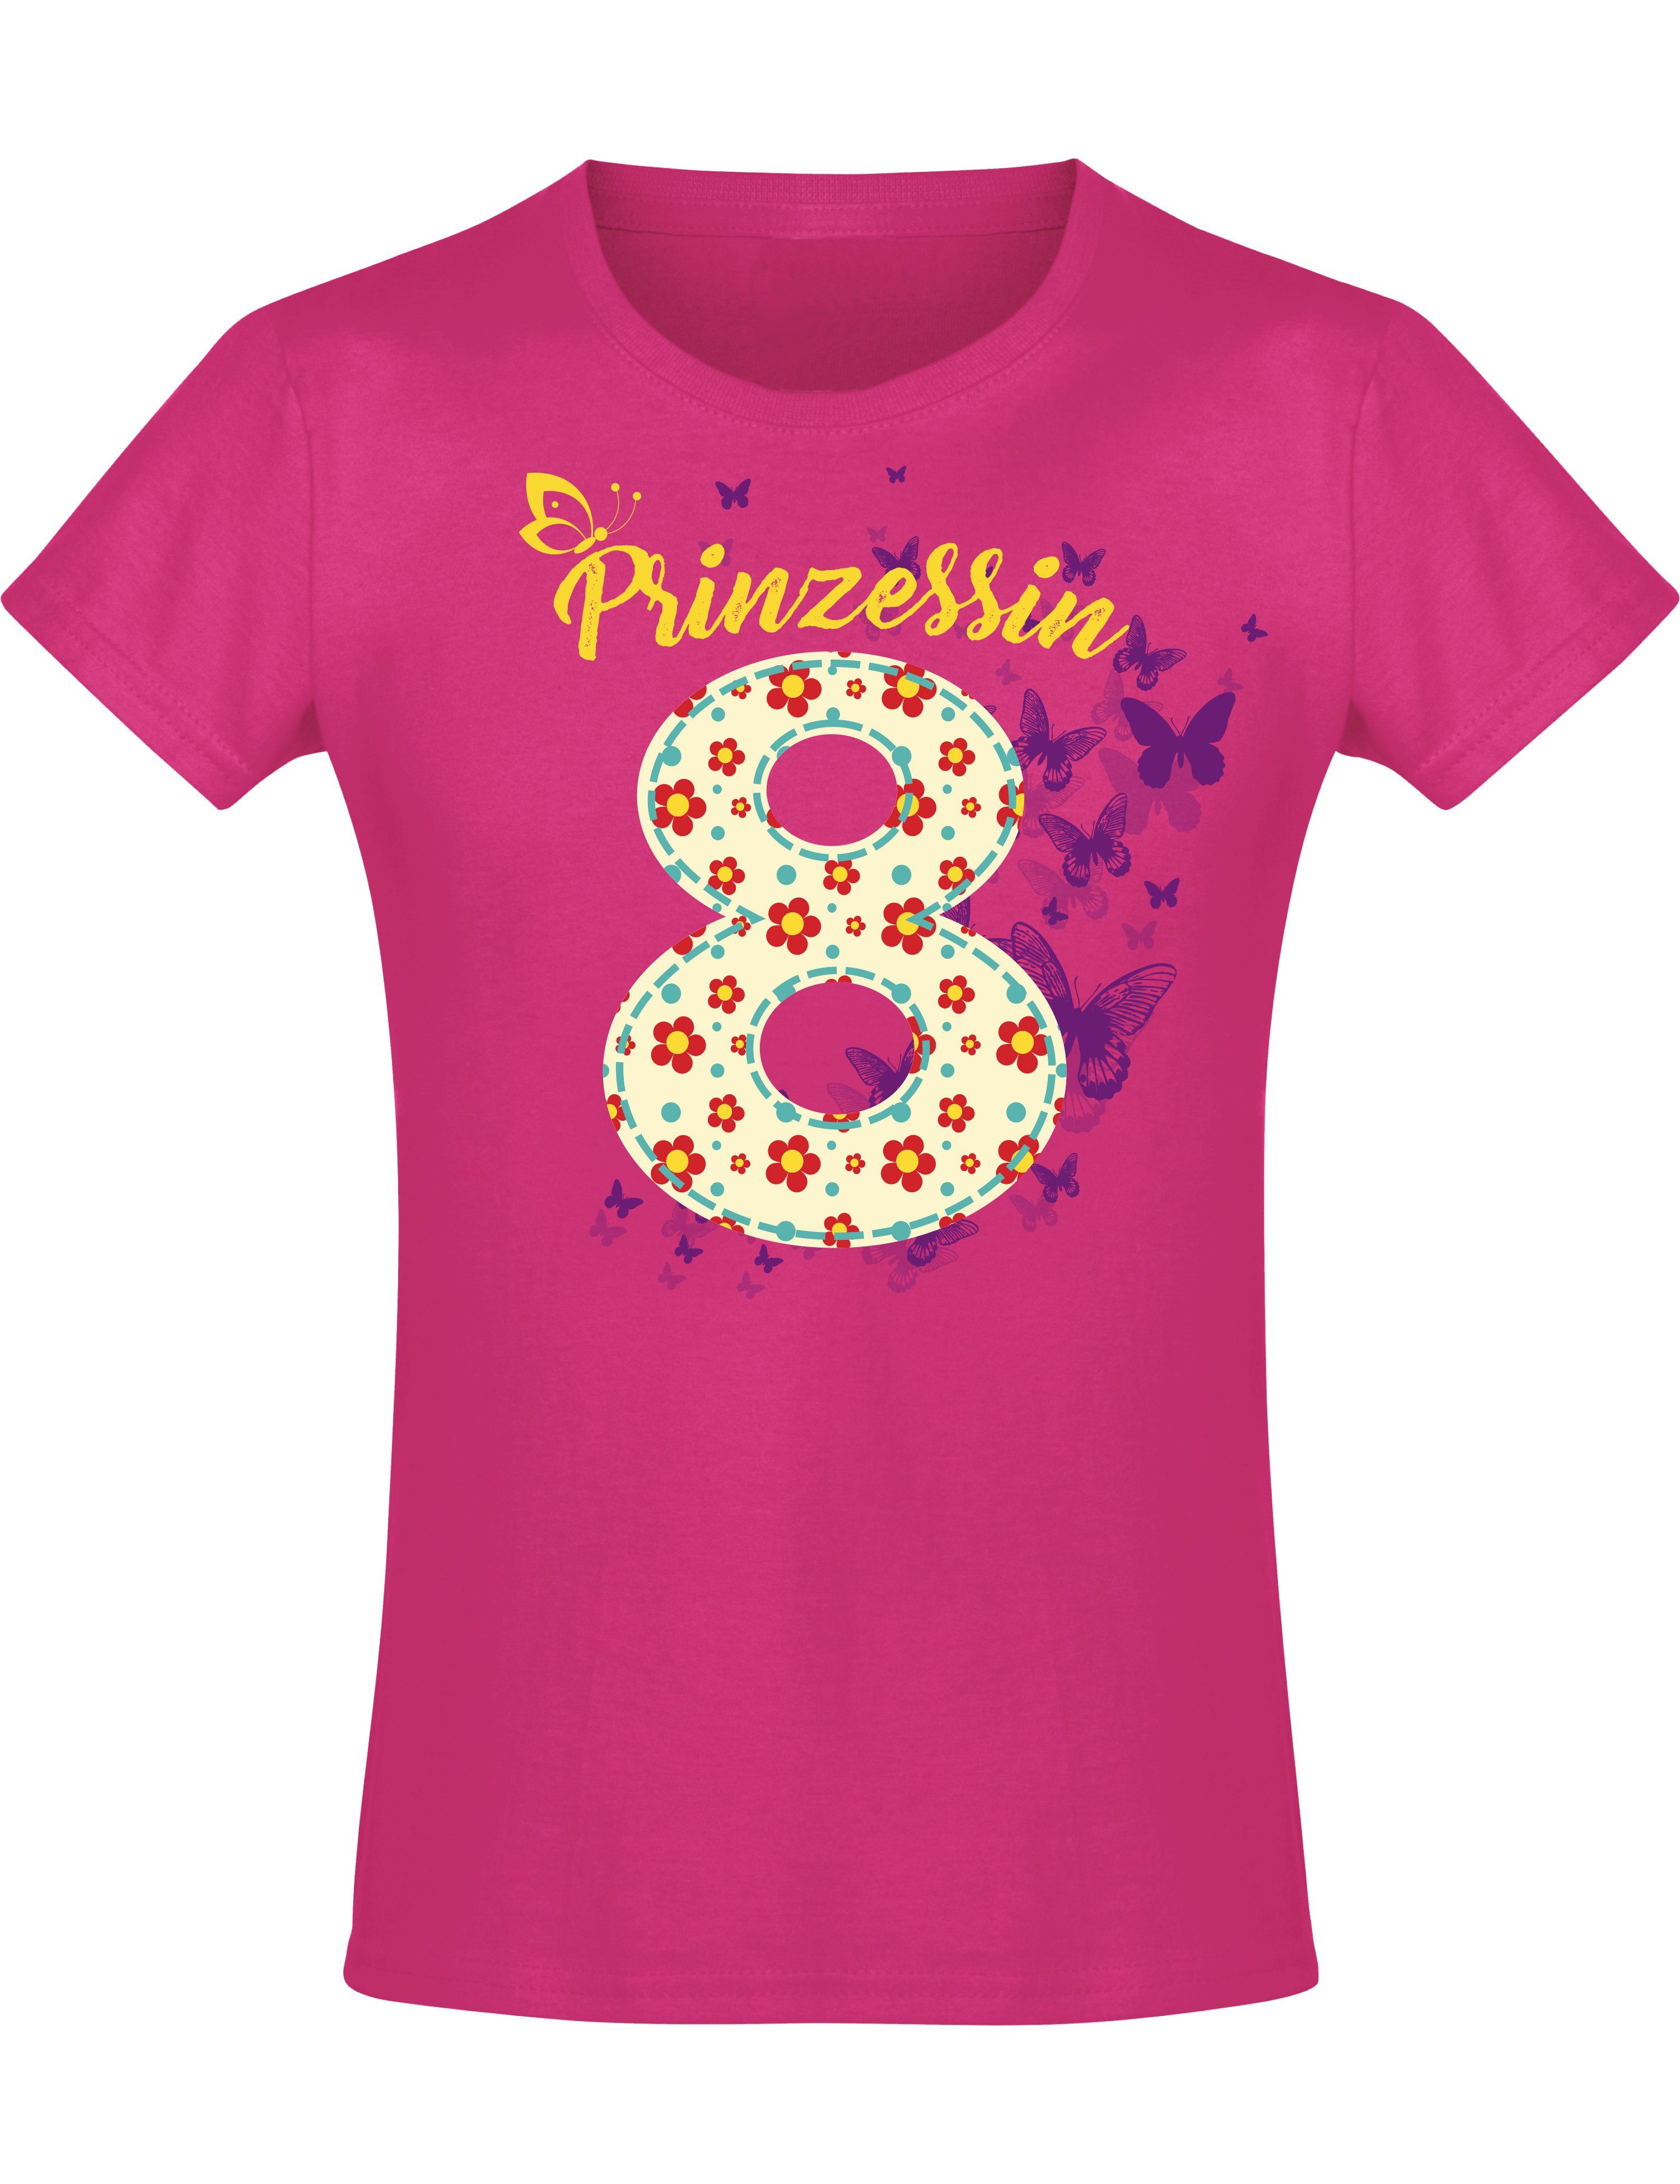 Print-Shirt mit 8 Geburstagsgeschenk Jahre hochwertiger Baumwolle für Mädchen : Baddery Siebdruck, aus Blumen,